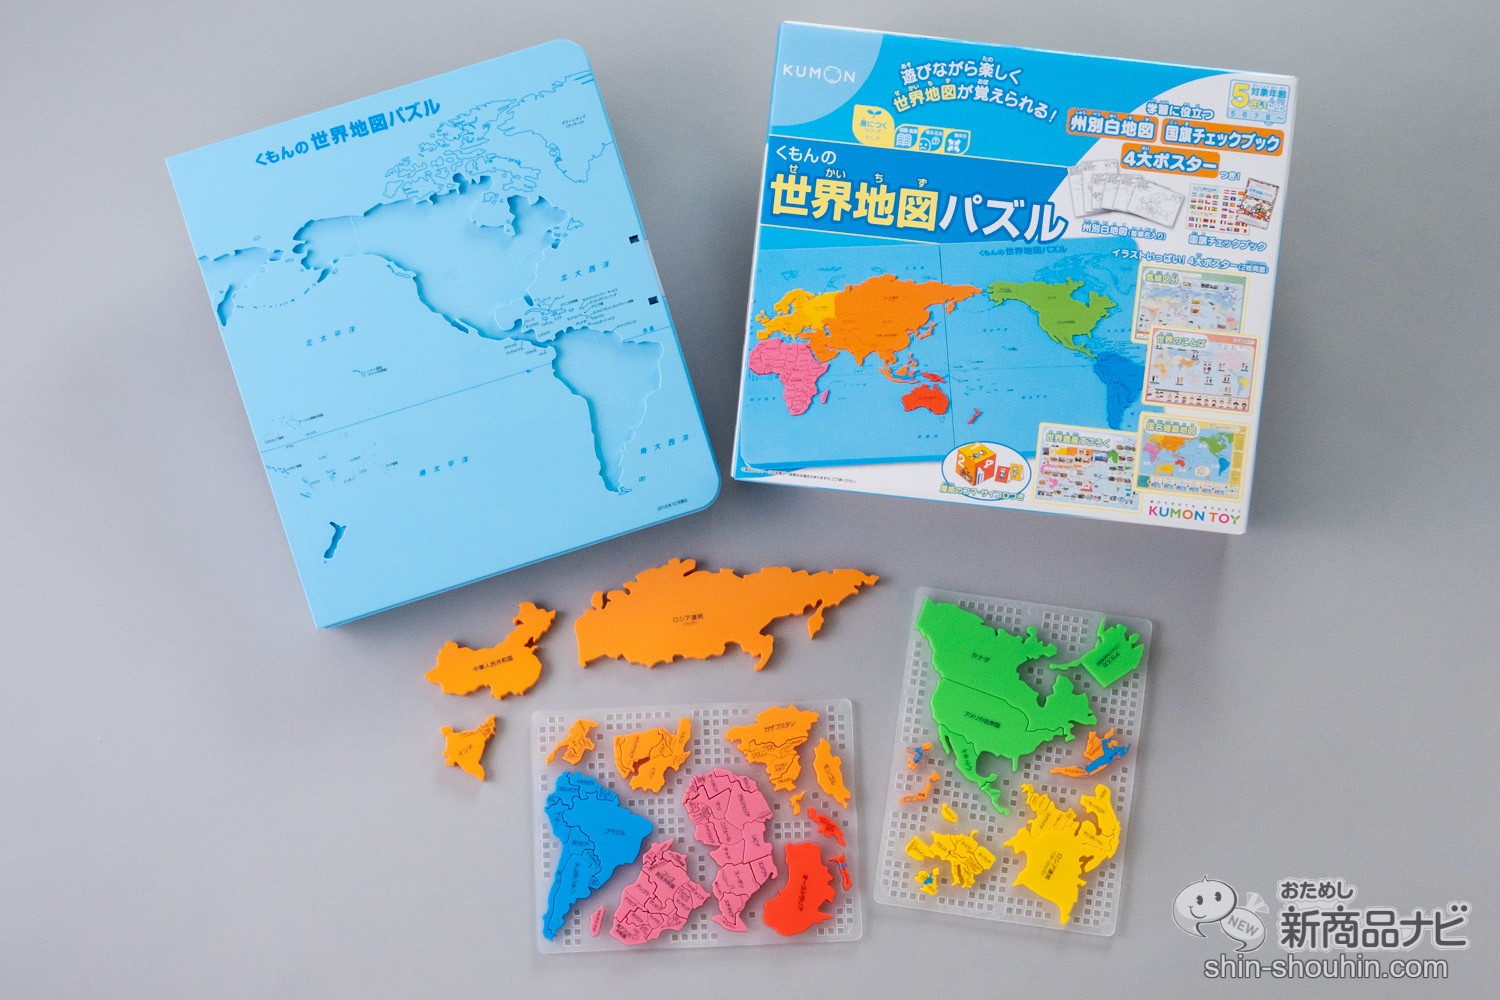 くもん出版 KUMON 世界地図パズル - パズル